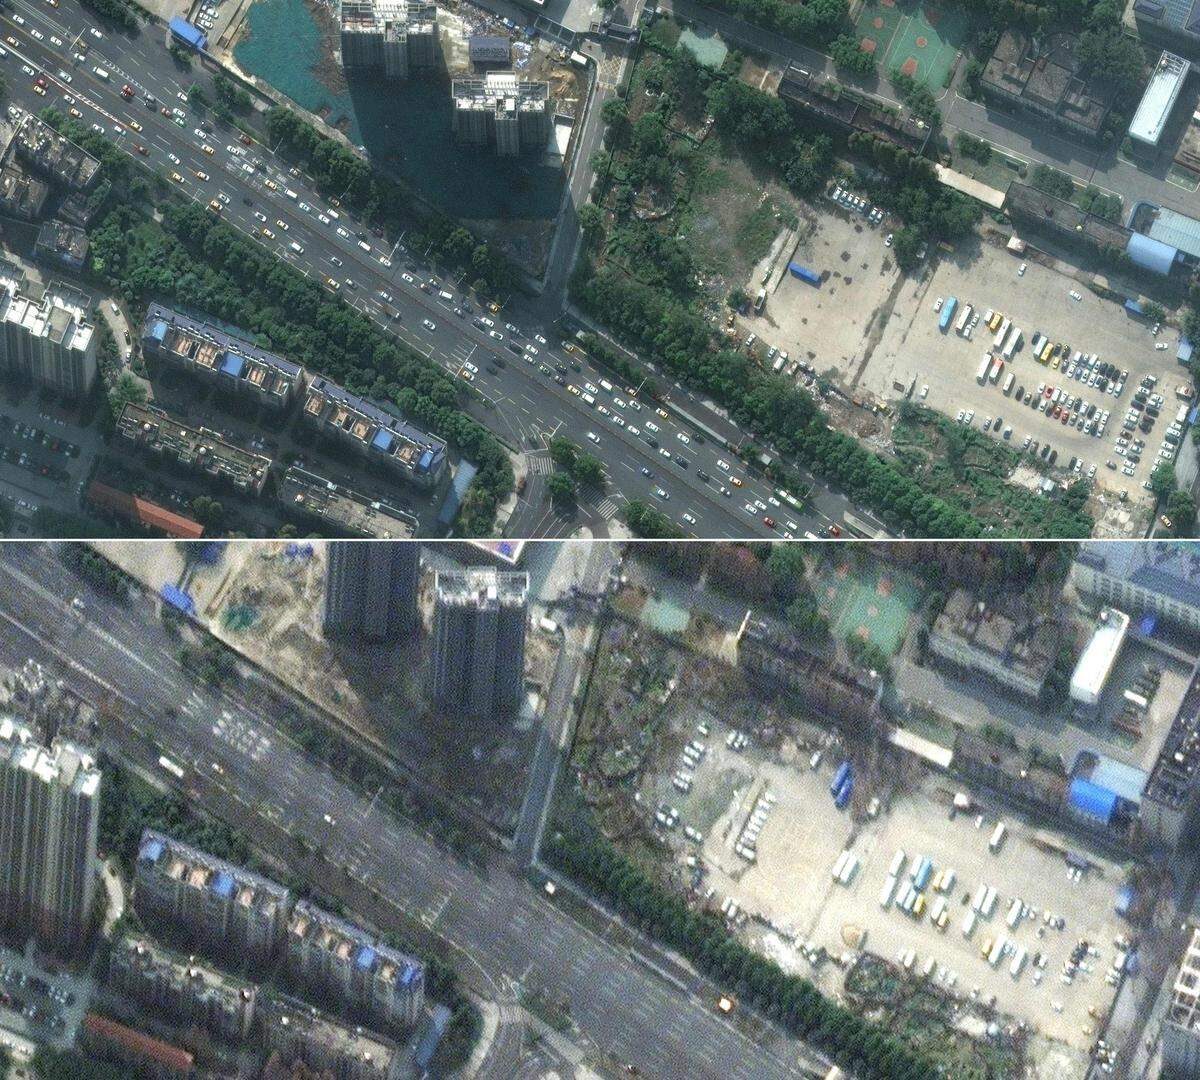 Ein Vergleich einer Hauptverkehrsstraße in der chinesischen Stadt Wuhan. Oben der normale Straßenverkher, unten nach Eintreten der Quarantäne-Phase.